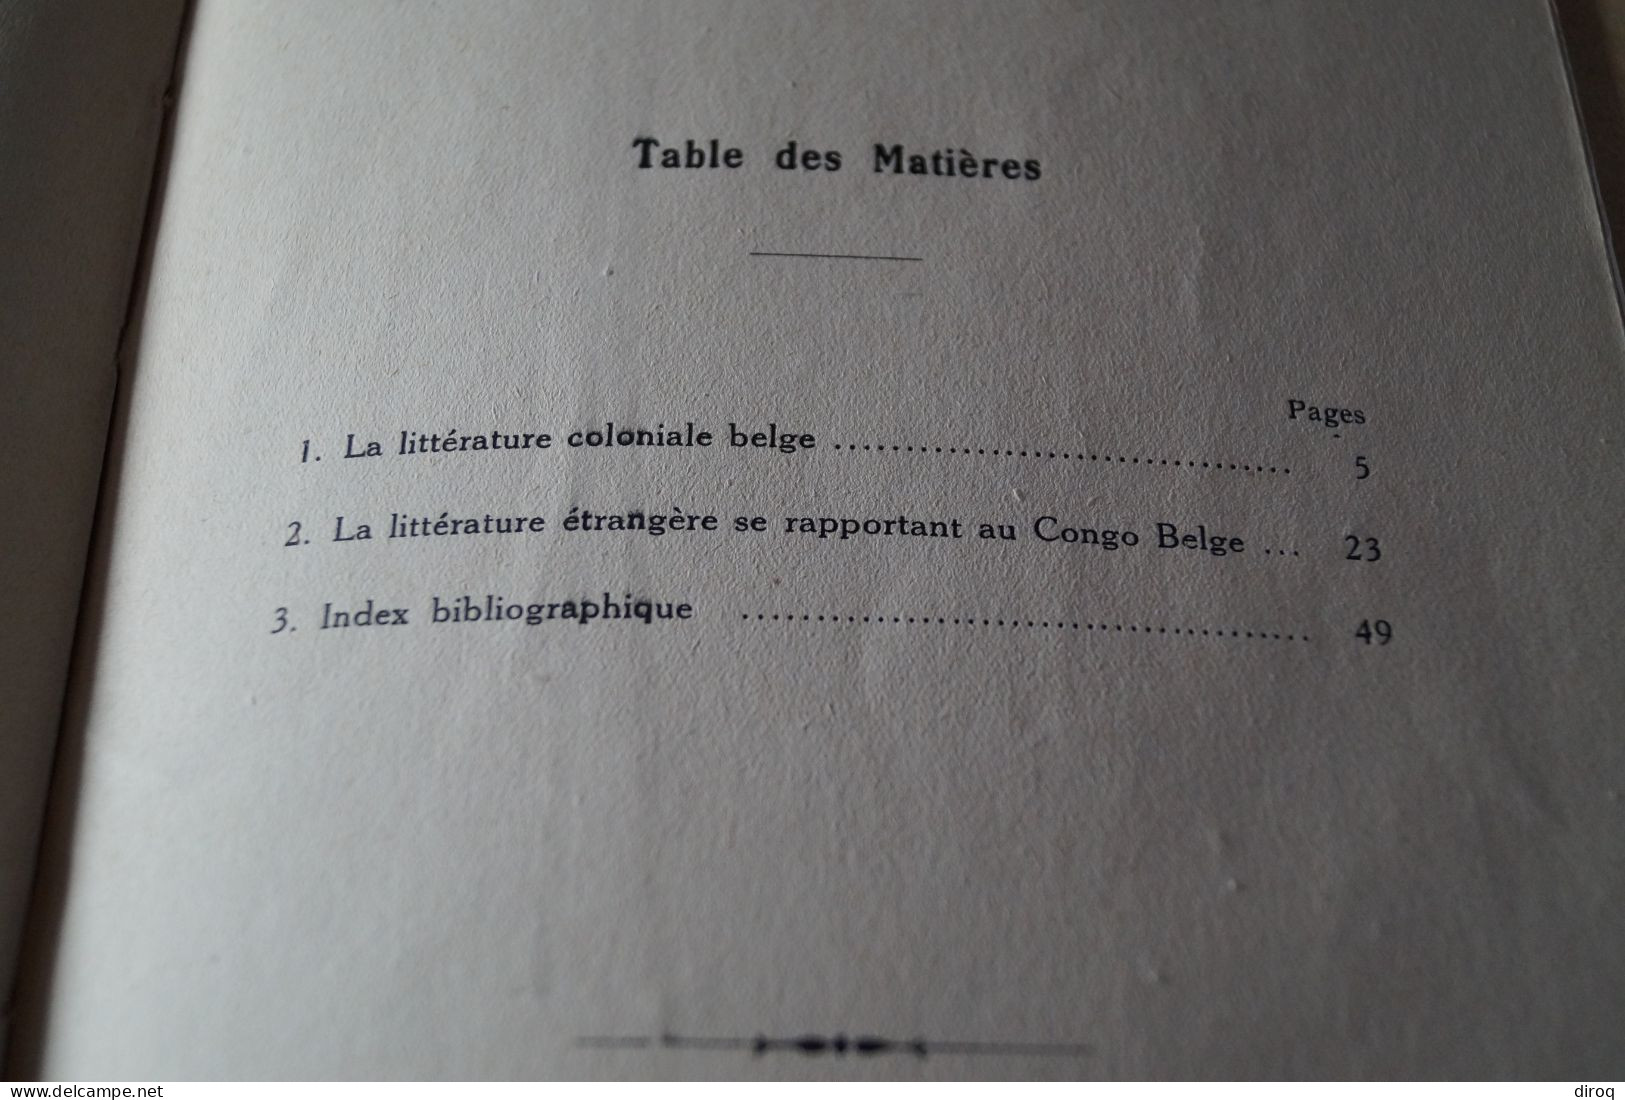 Congo Belge,1930,notes de littérature coloniale,Gaston-Denys Périer,54 pages,25,5 Cm. sur 17 Cm.